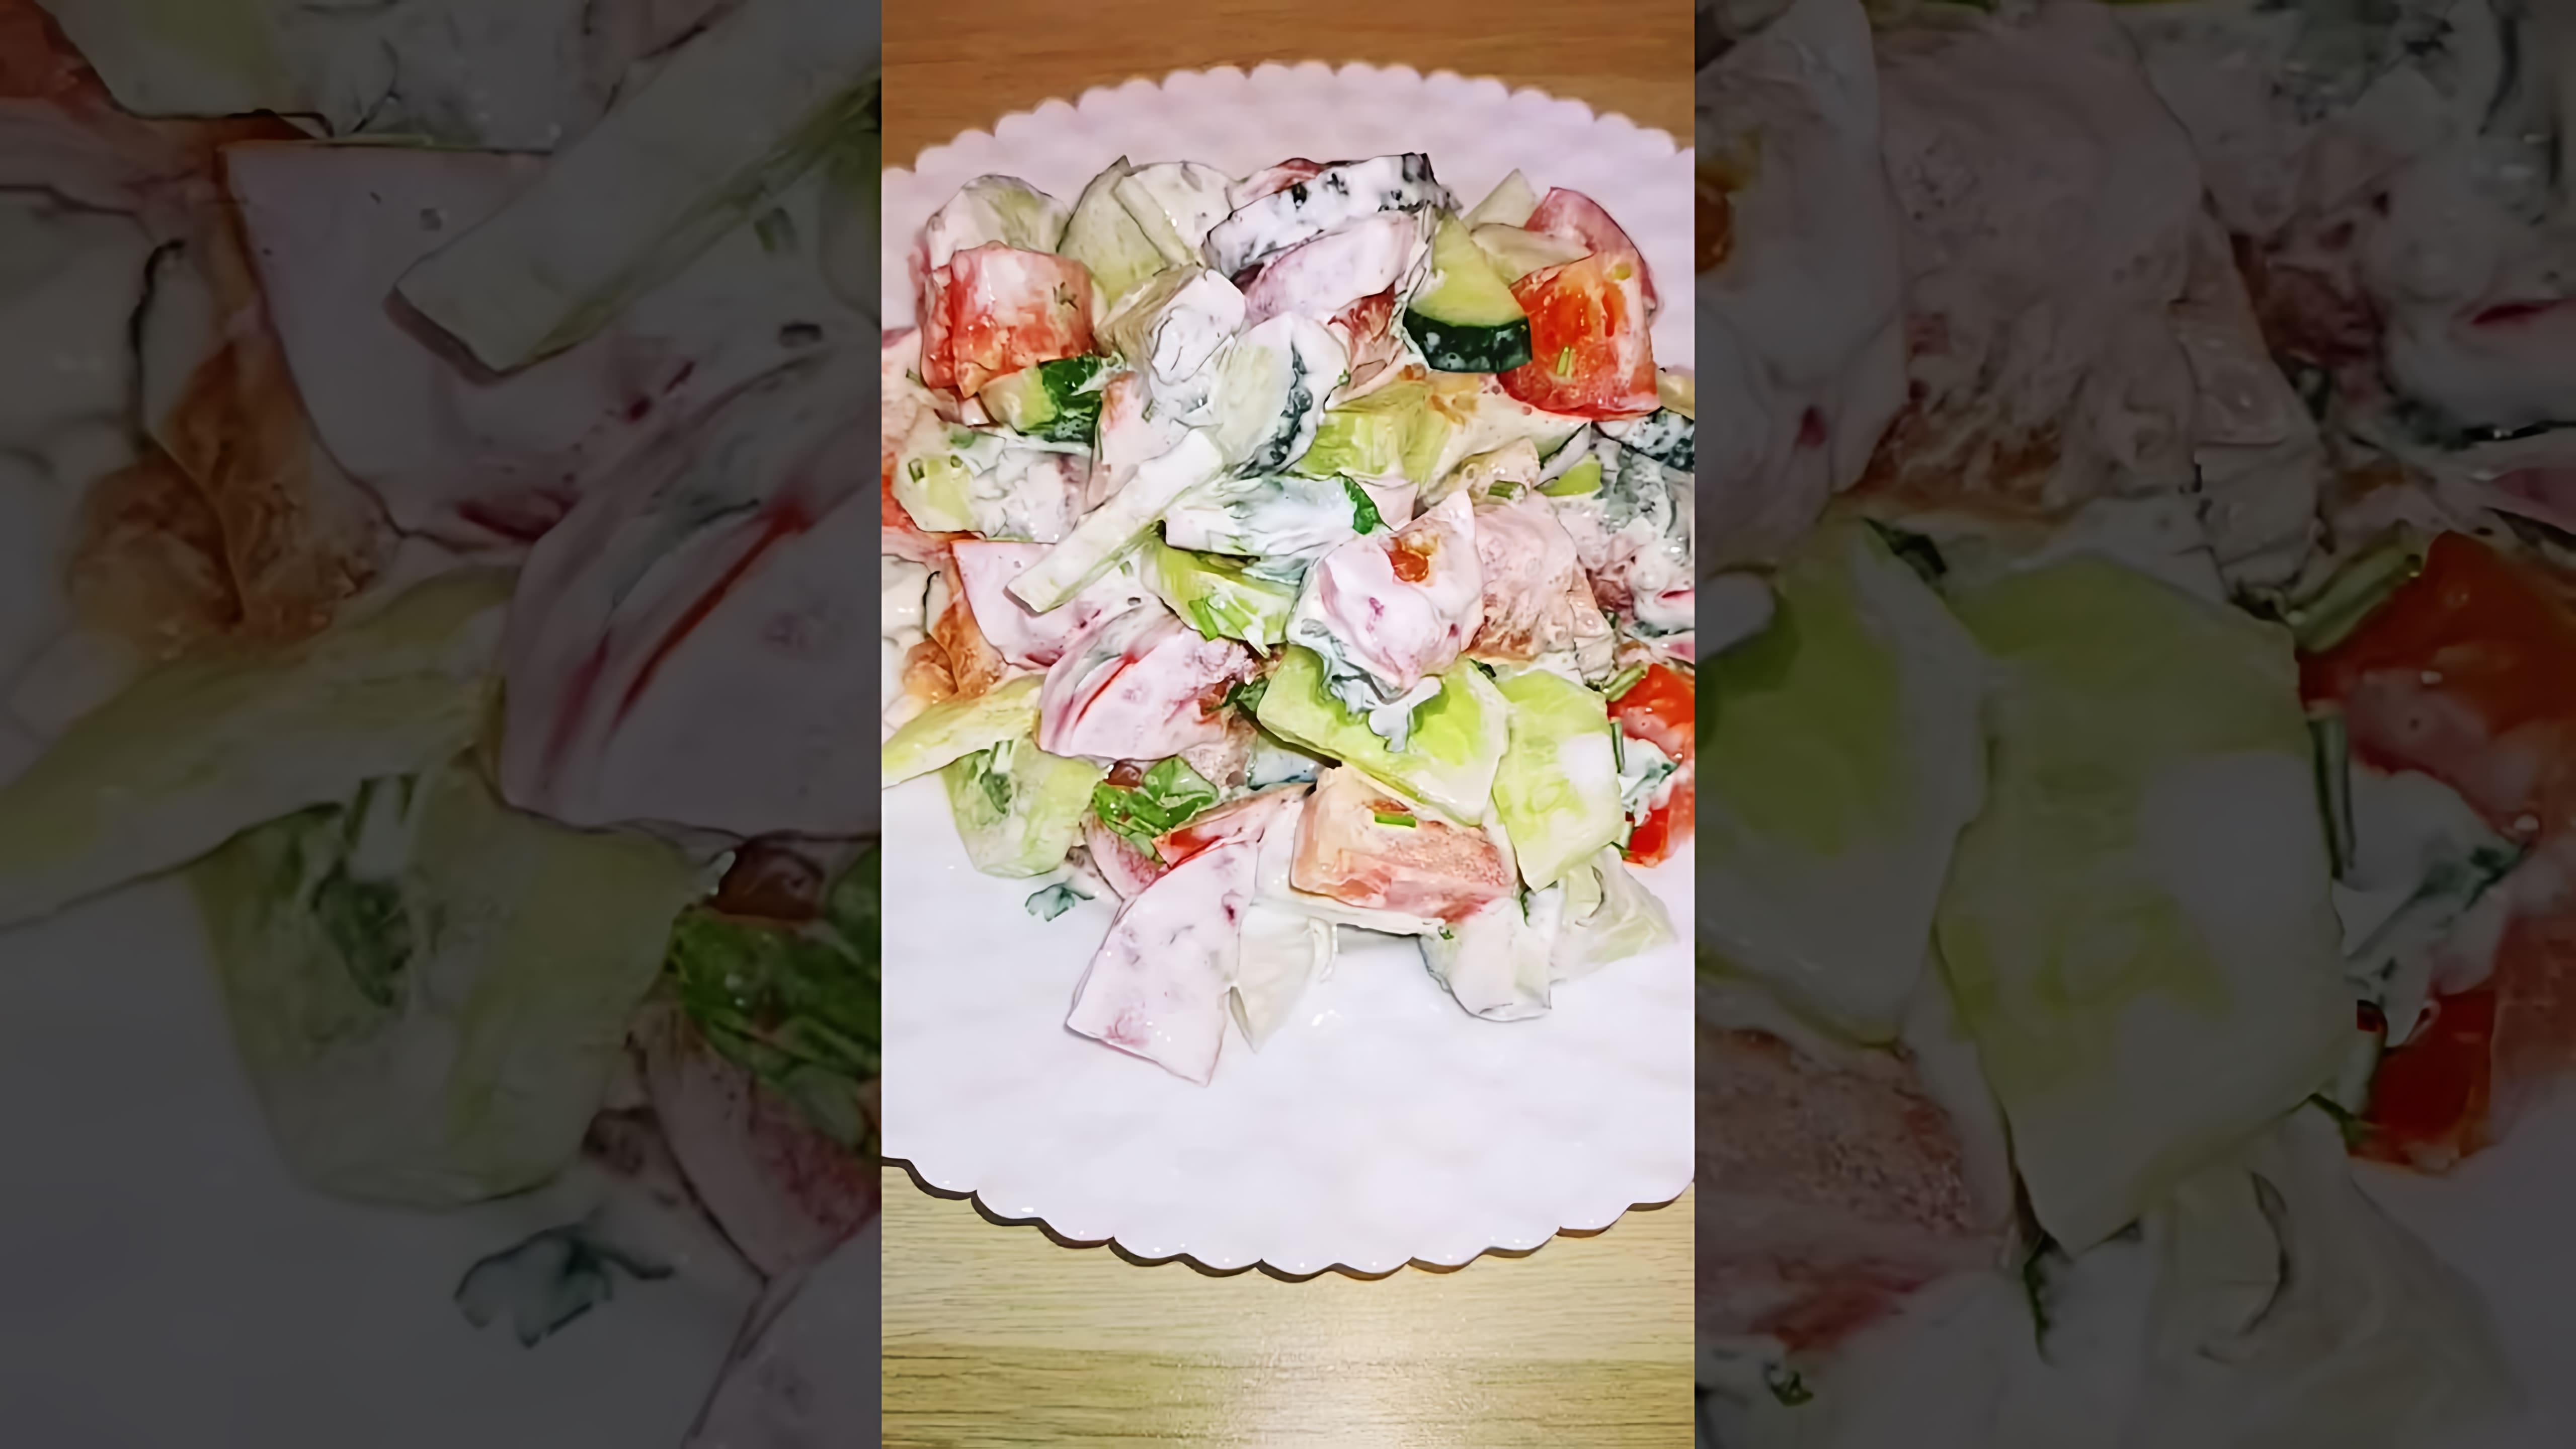 Вкусный летний салат - это простое и вкусное блюдо, которое можно приготовить в любое время года